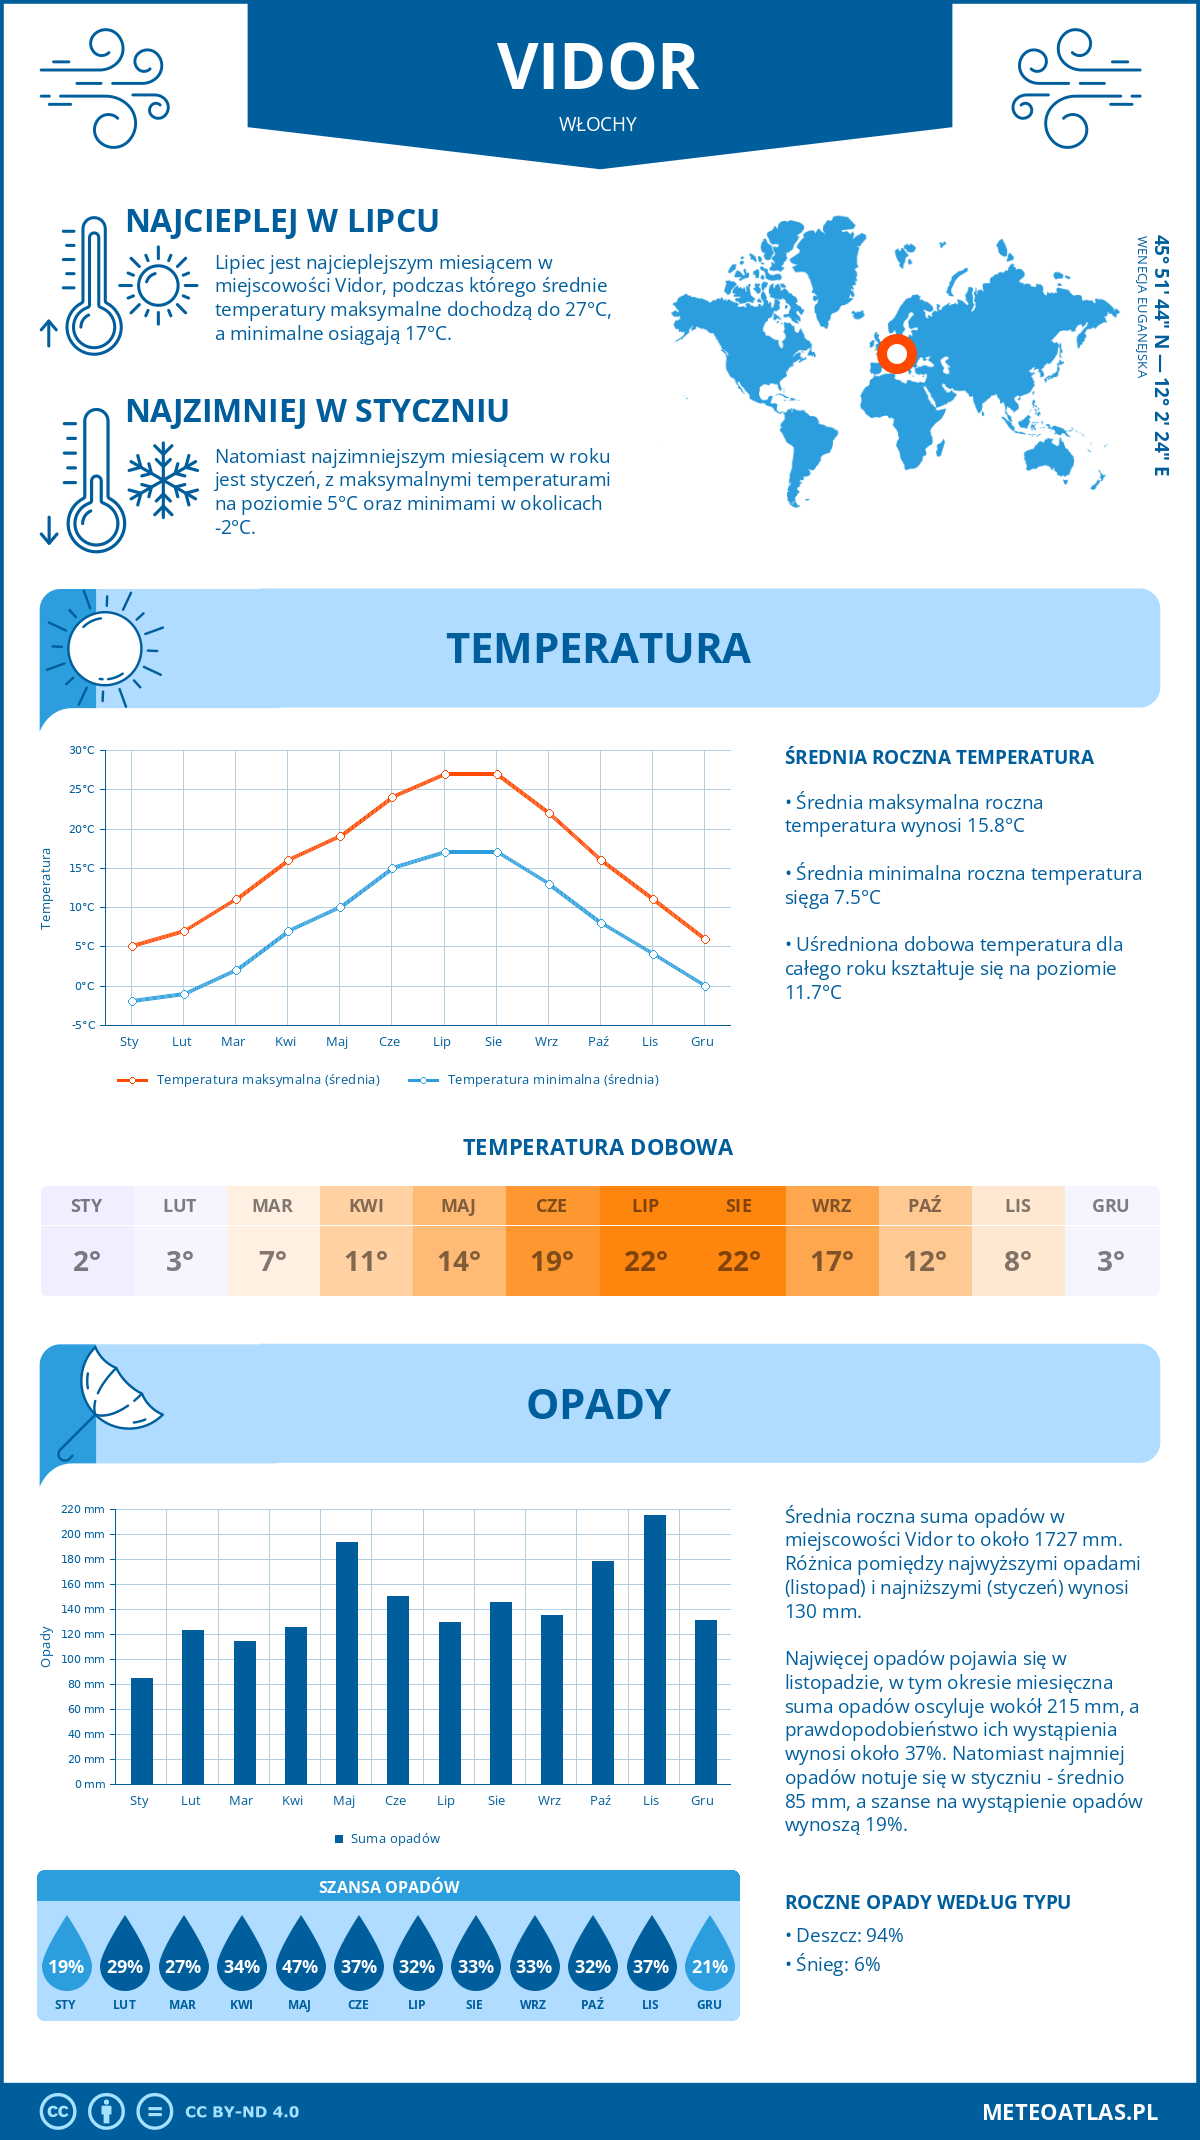 Pogoda Vidor (Włochy). Temperatura oraz opady.